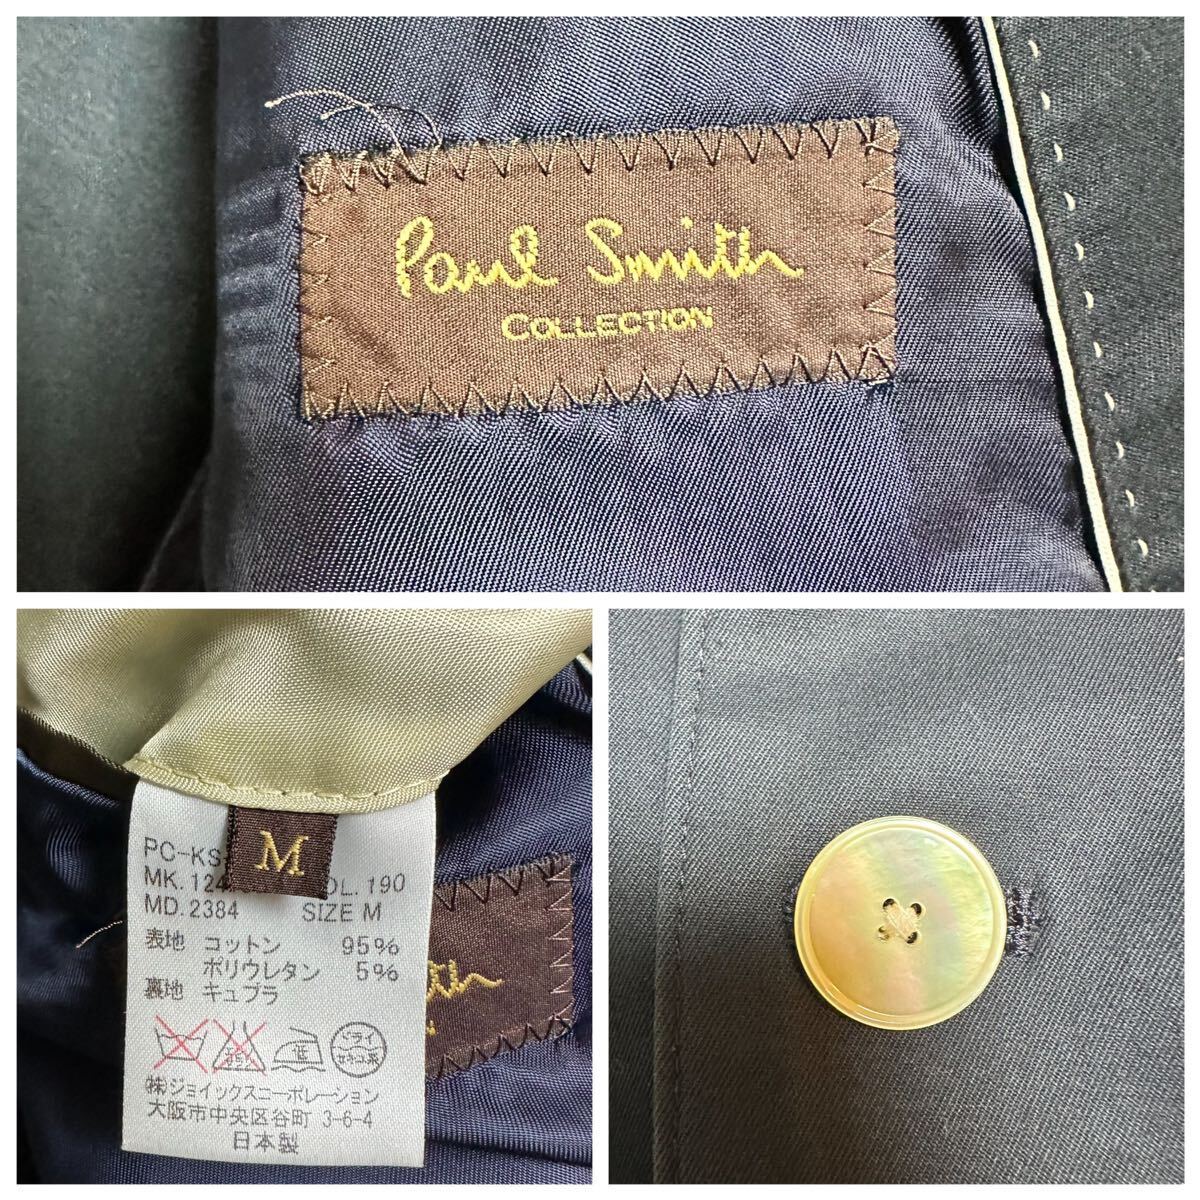 【美品】Paul Smith Collection ポールスミス コレクション スーツ セットアップ 上下 アンコン カジュアル 貝殻ボタン 紺 ネイビー M_画像10